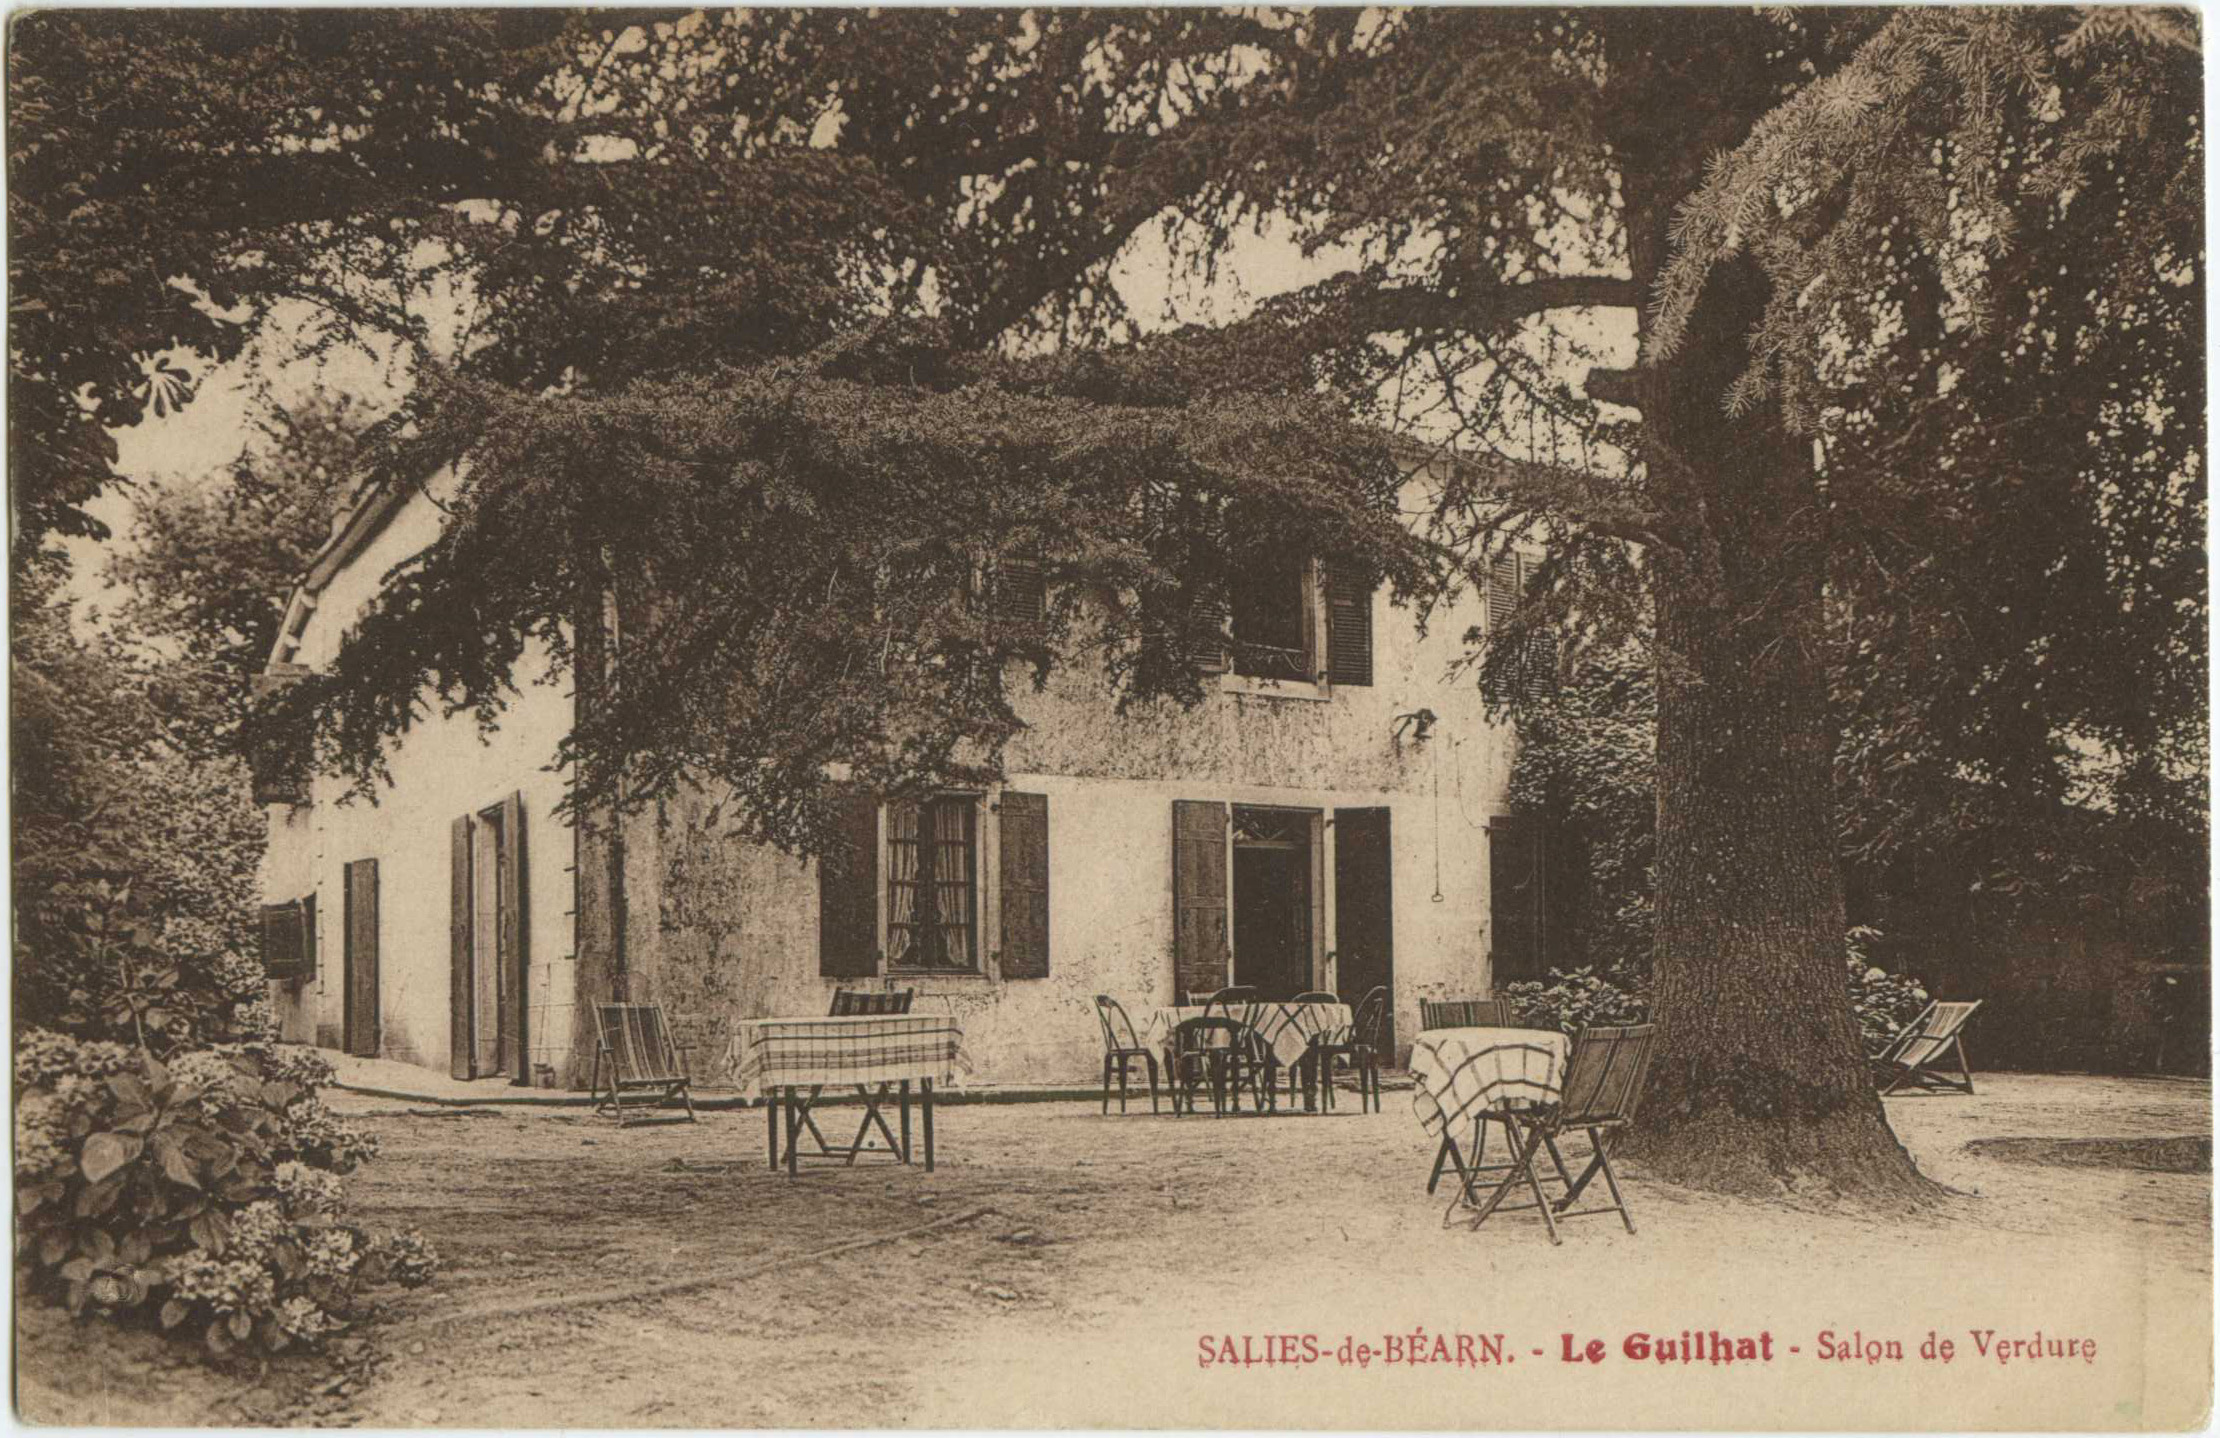 Salies-de-Béarn - Le Guilhat - Salon de Verdure